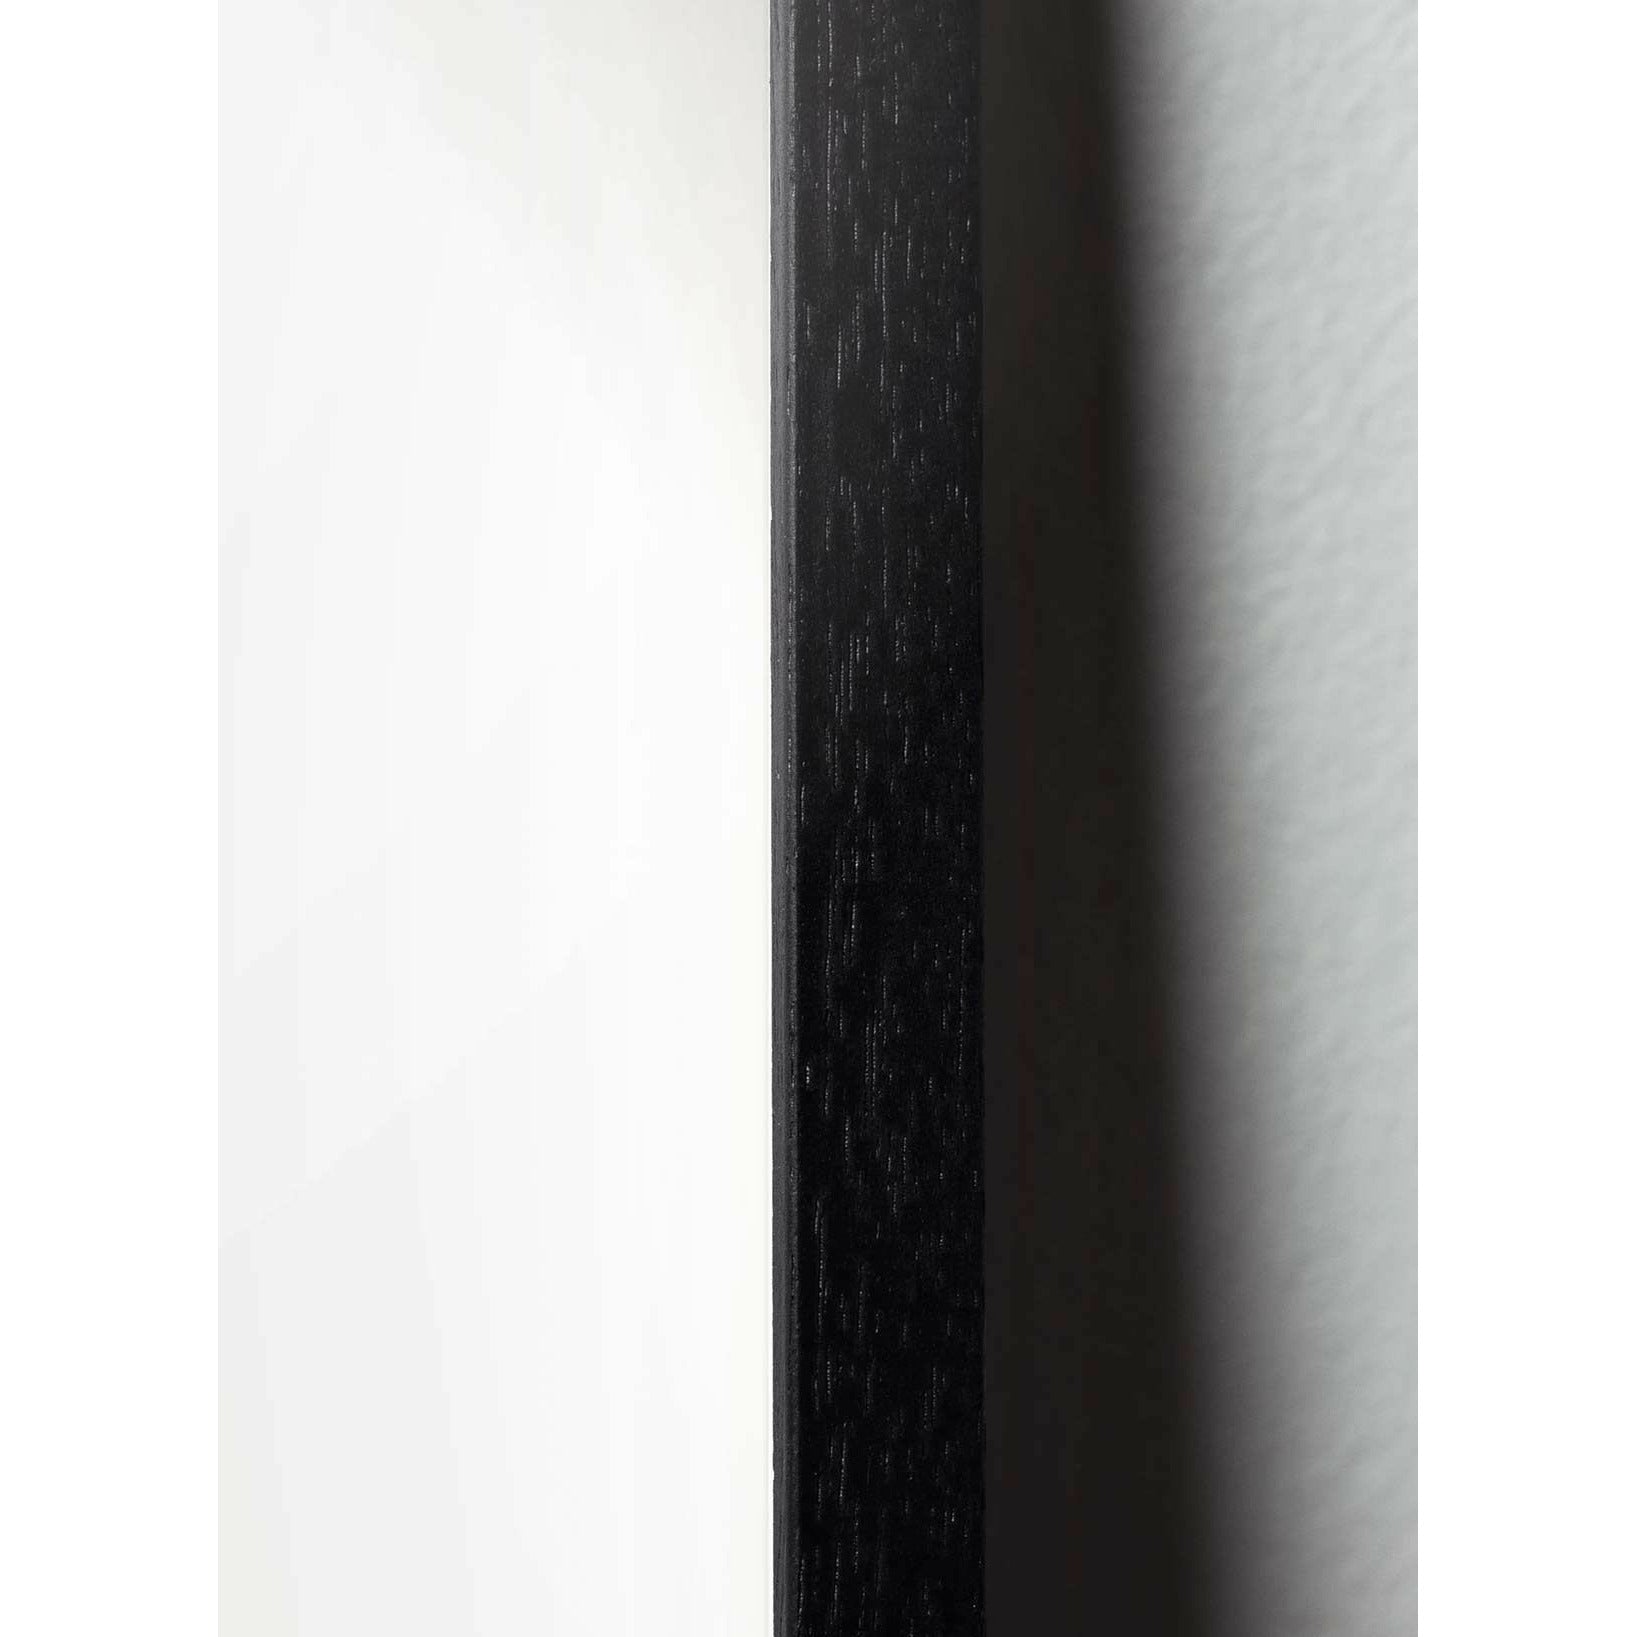 Brainchild Egg Line Poster, Rahmen aus schwarz lackiertem Holz 30x40 cm, weißer Hintergrund